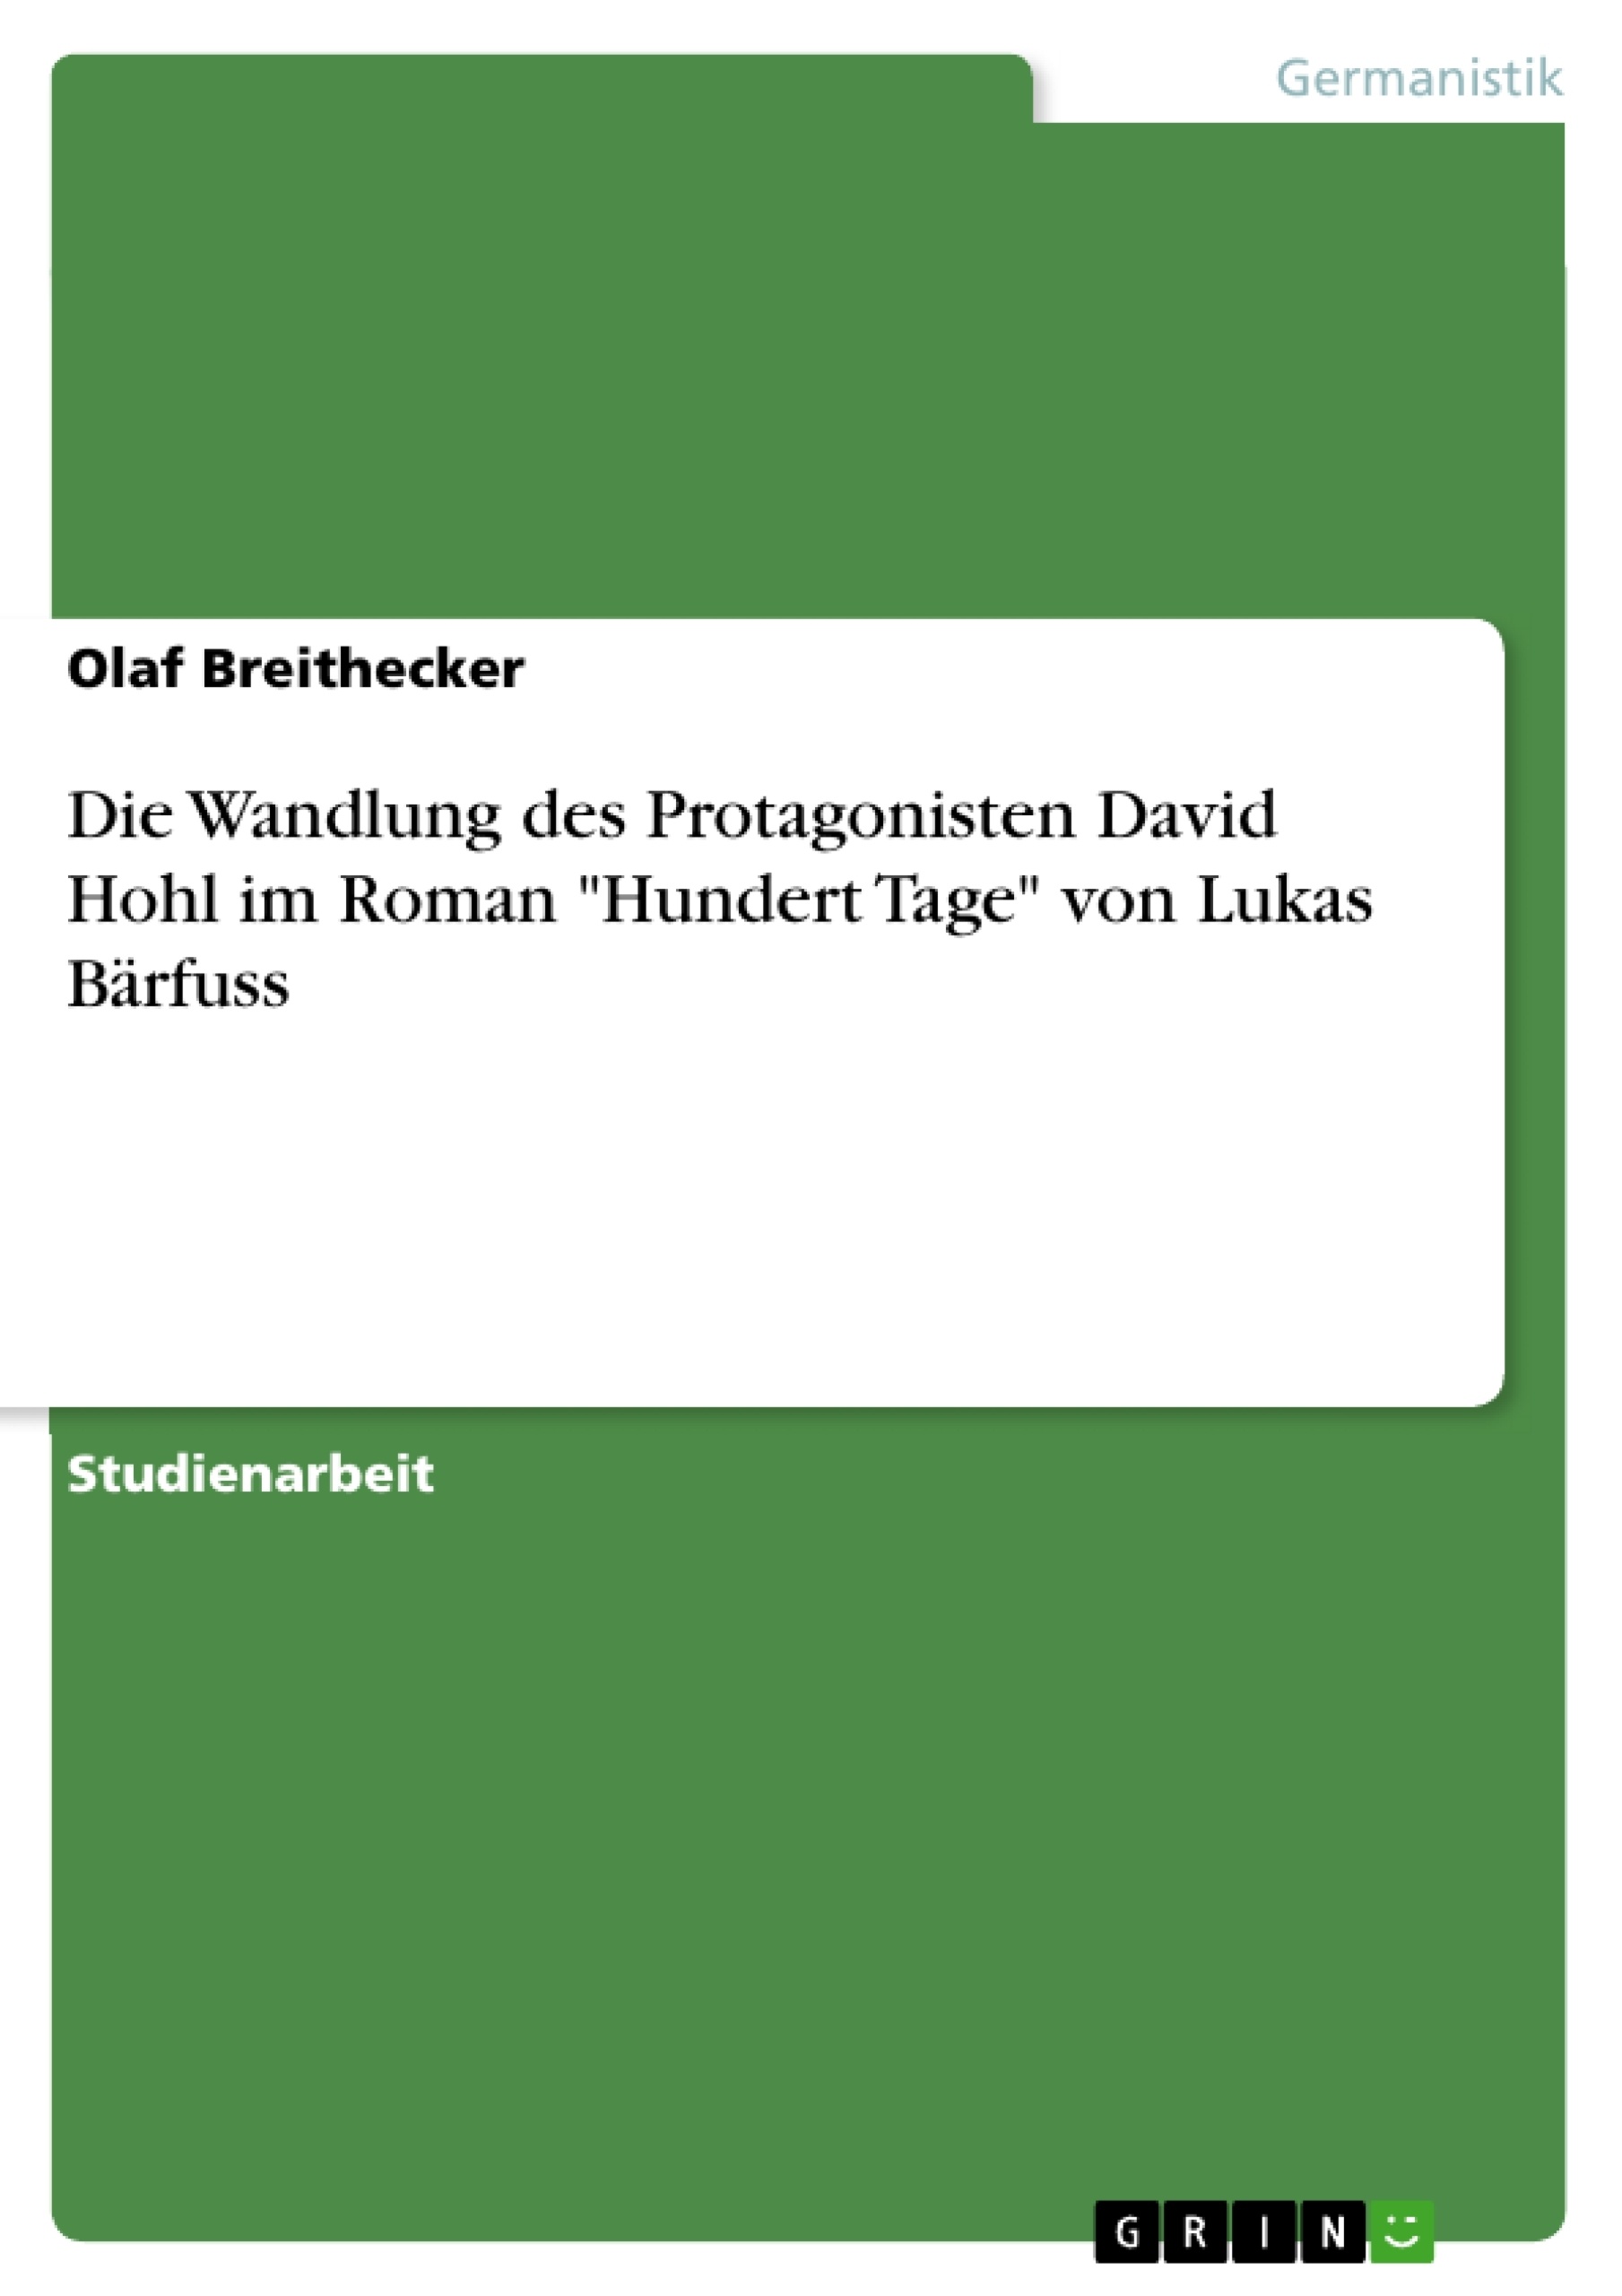 Titre: Die Wandlung des Protagonisten David Hohl im Roman "Hundert Tage" von Lukas Bärfuss